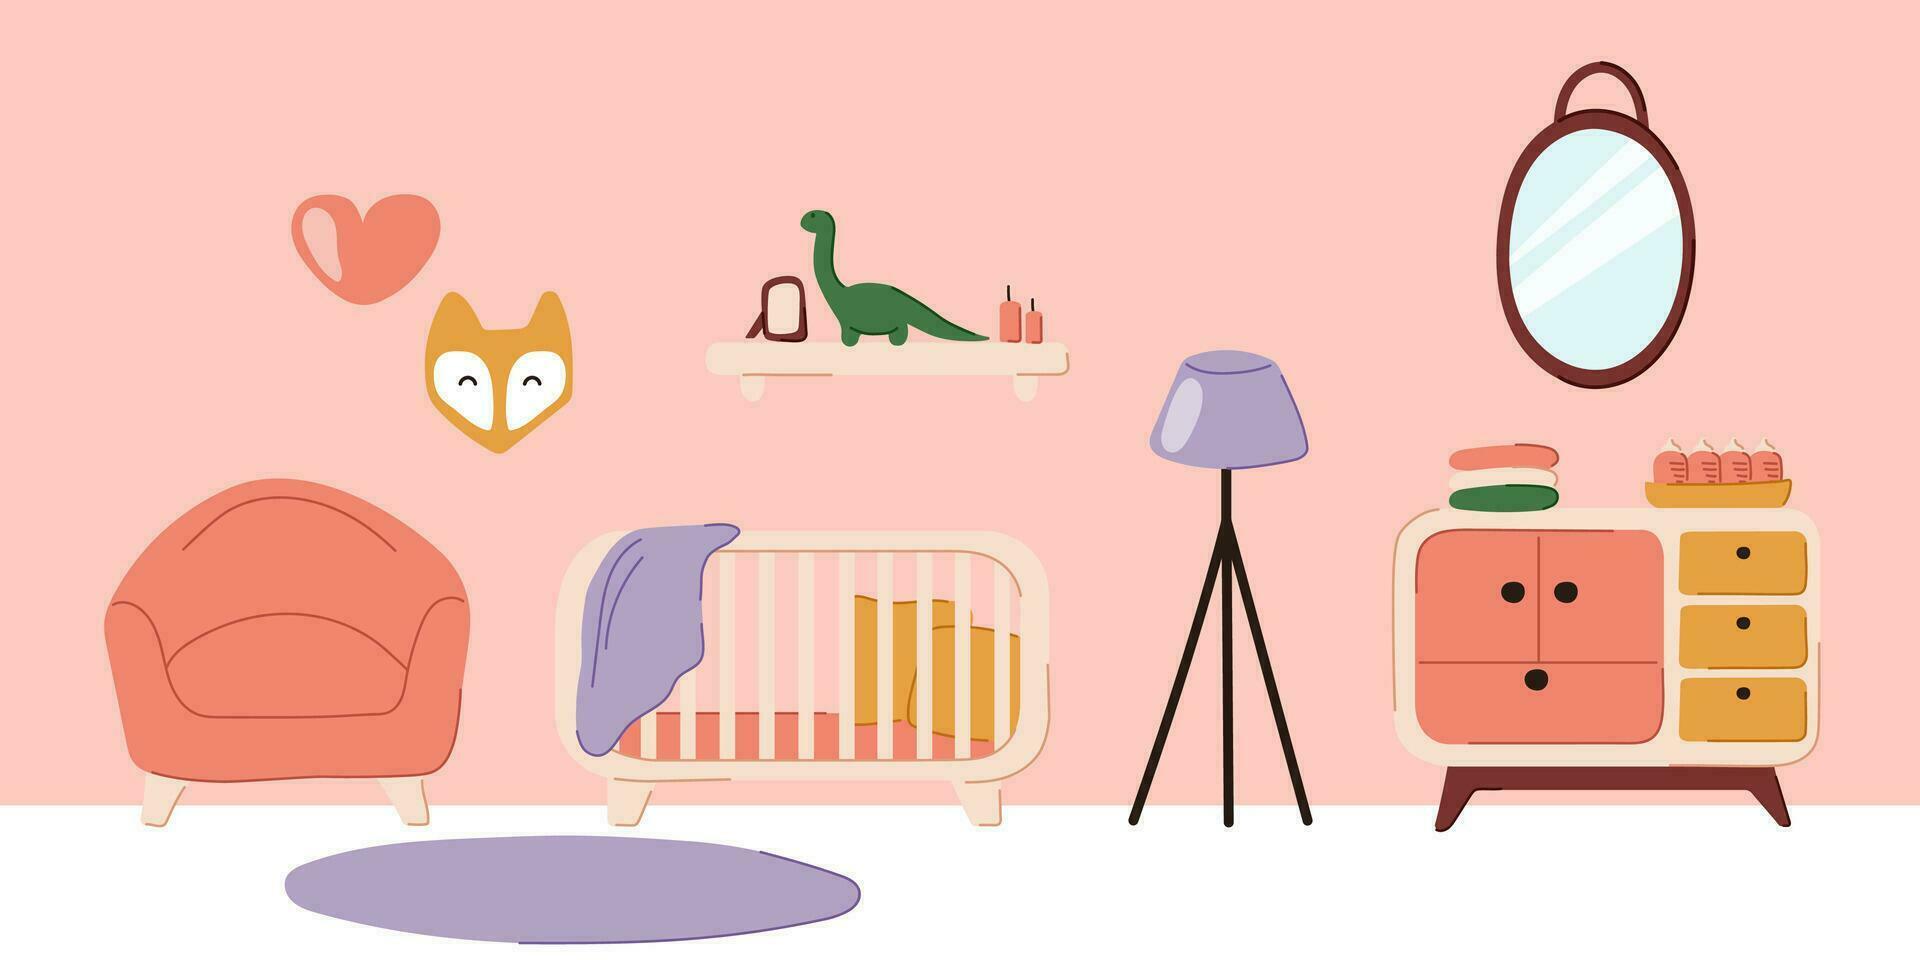 bebé habitación, guardería dormitorio con cuna cama, muebles, alfombra, piso lámpara y espejo. niño habitación interior en garabatear plano estilo con cuna y bebé juguetes móvil. vector ilustración.